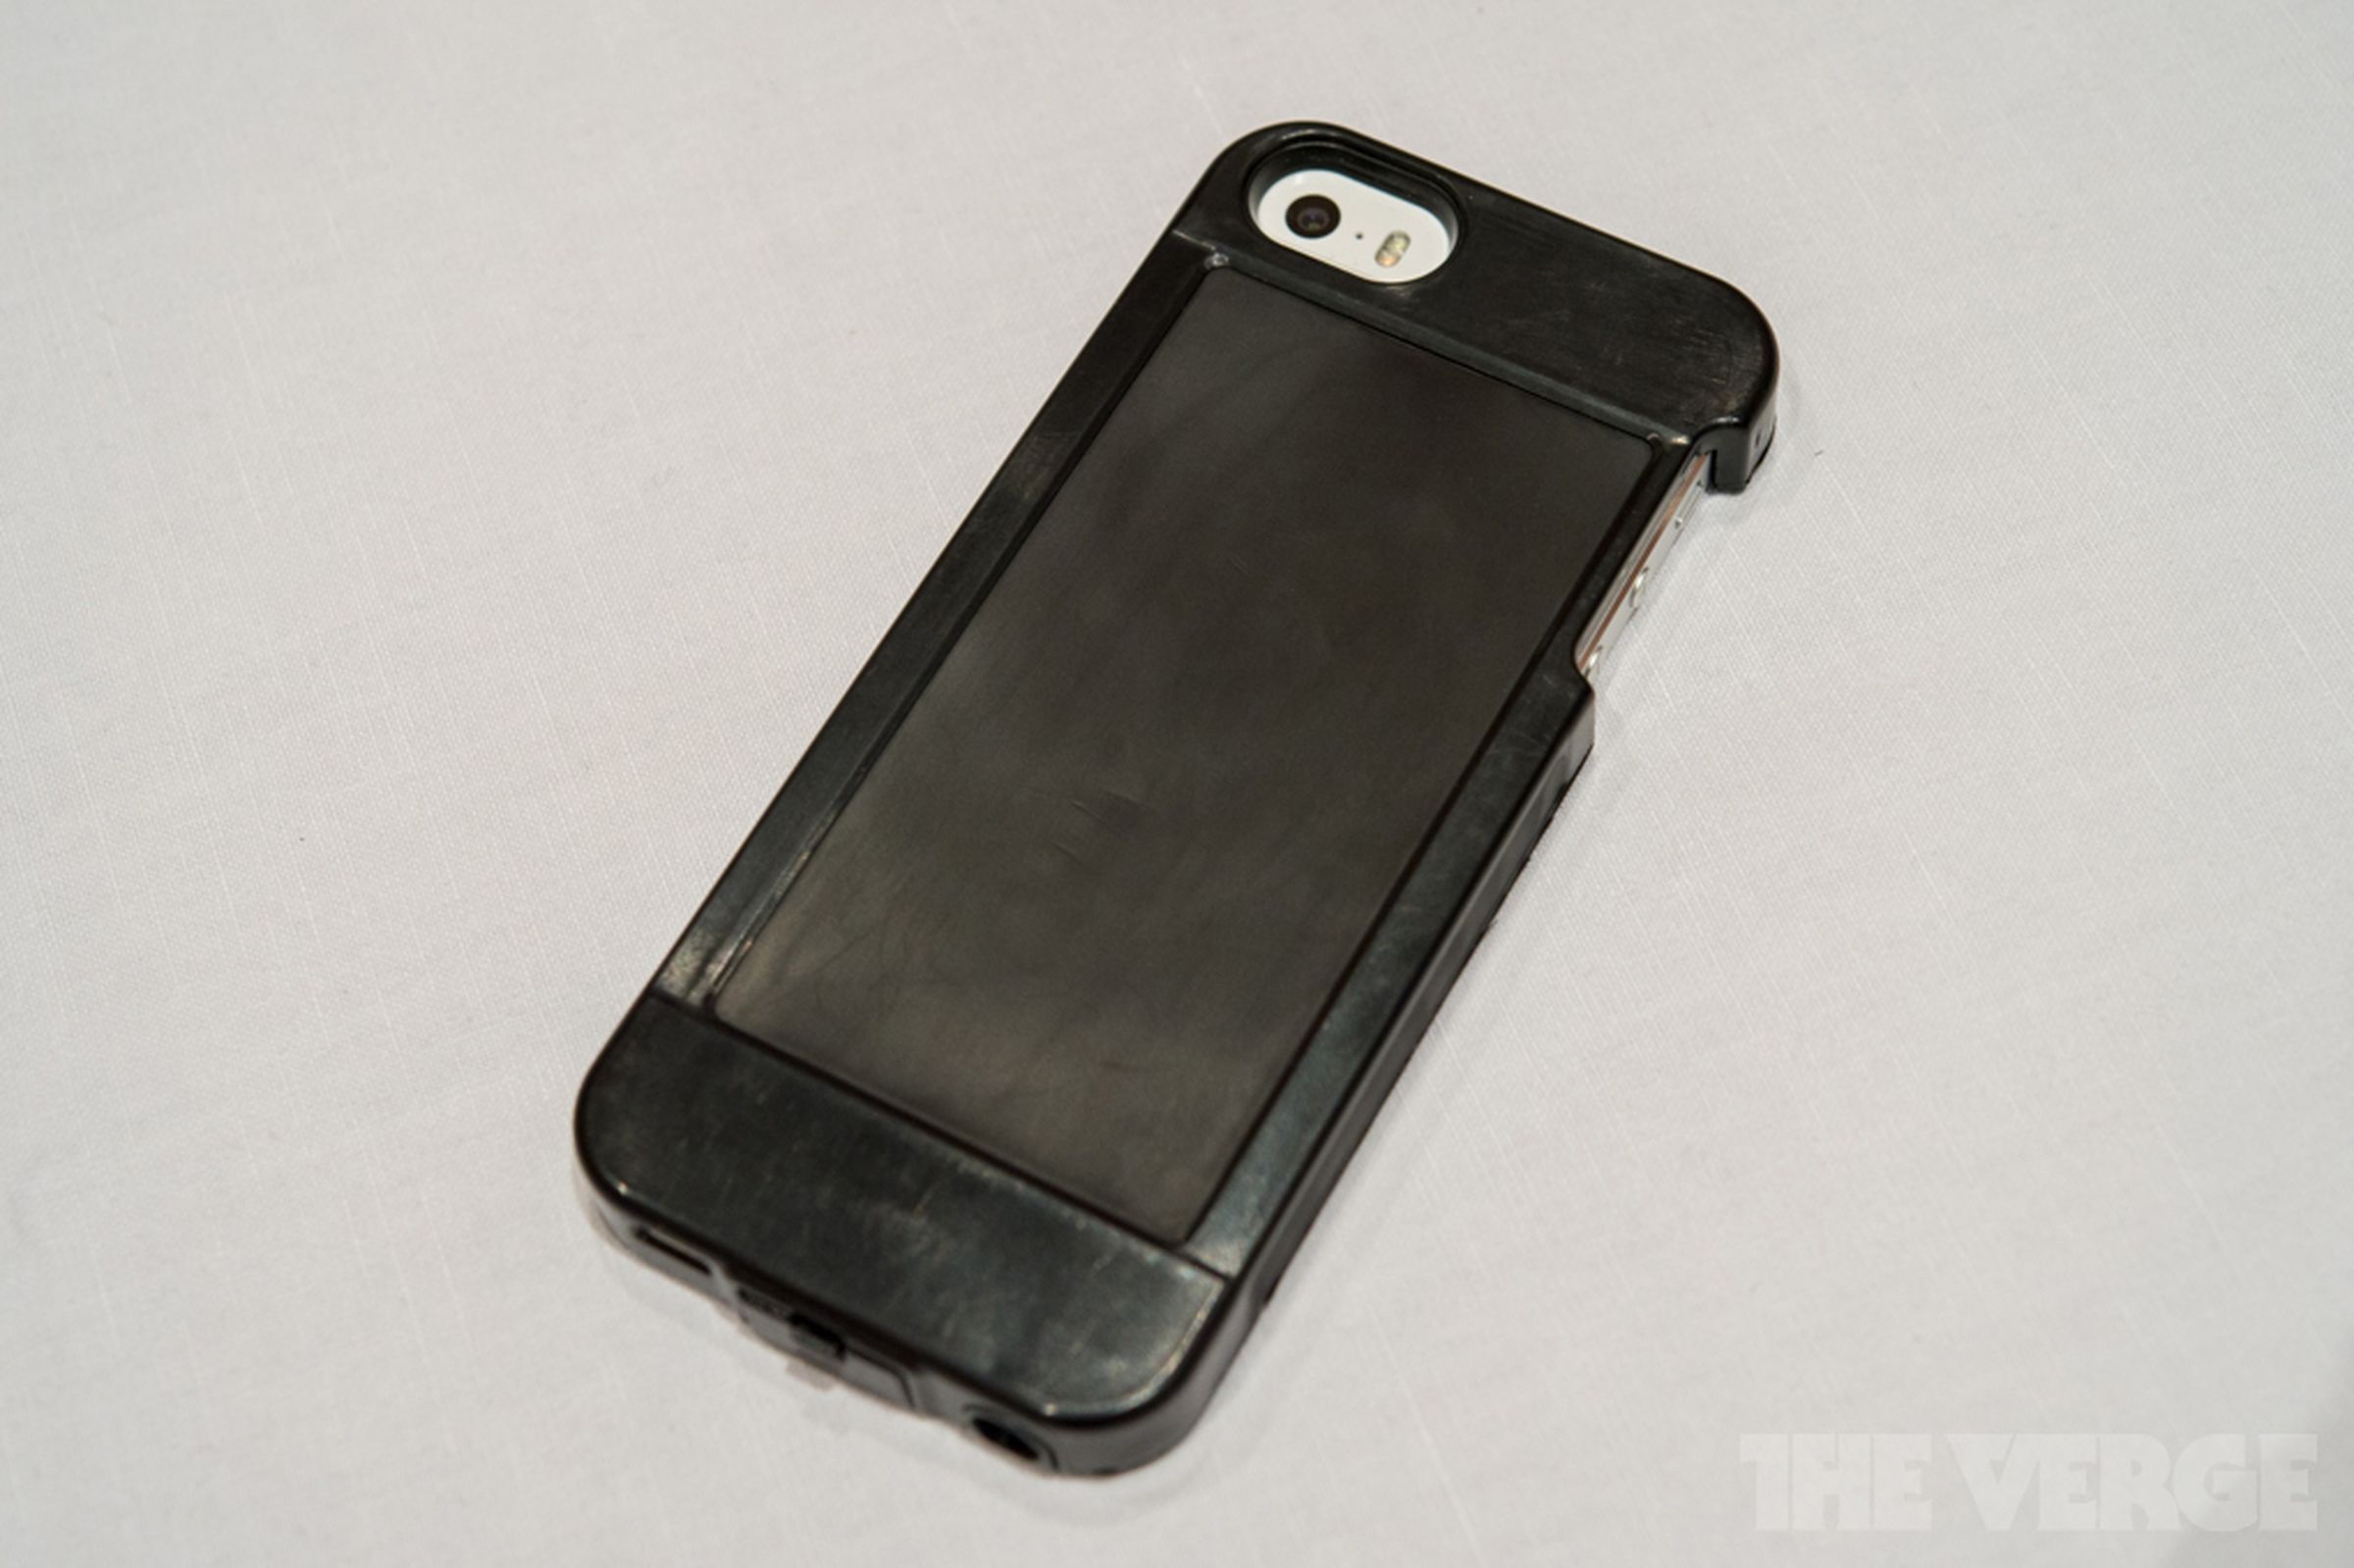 Sensus pressure-sensitive iPhone case pictures